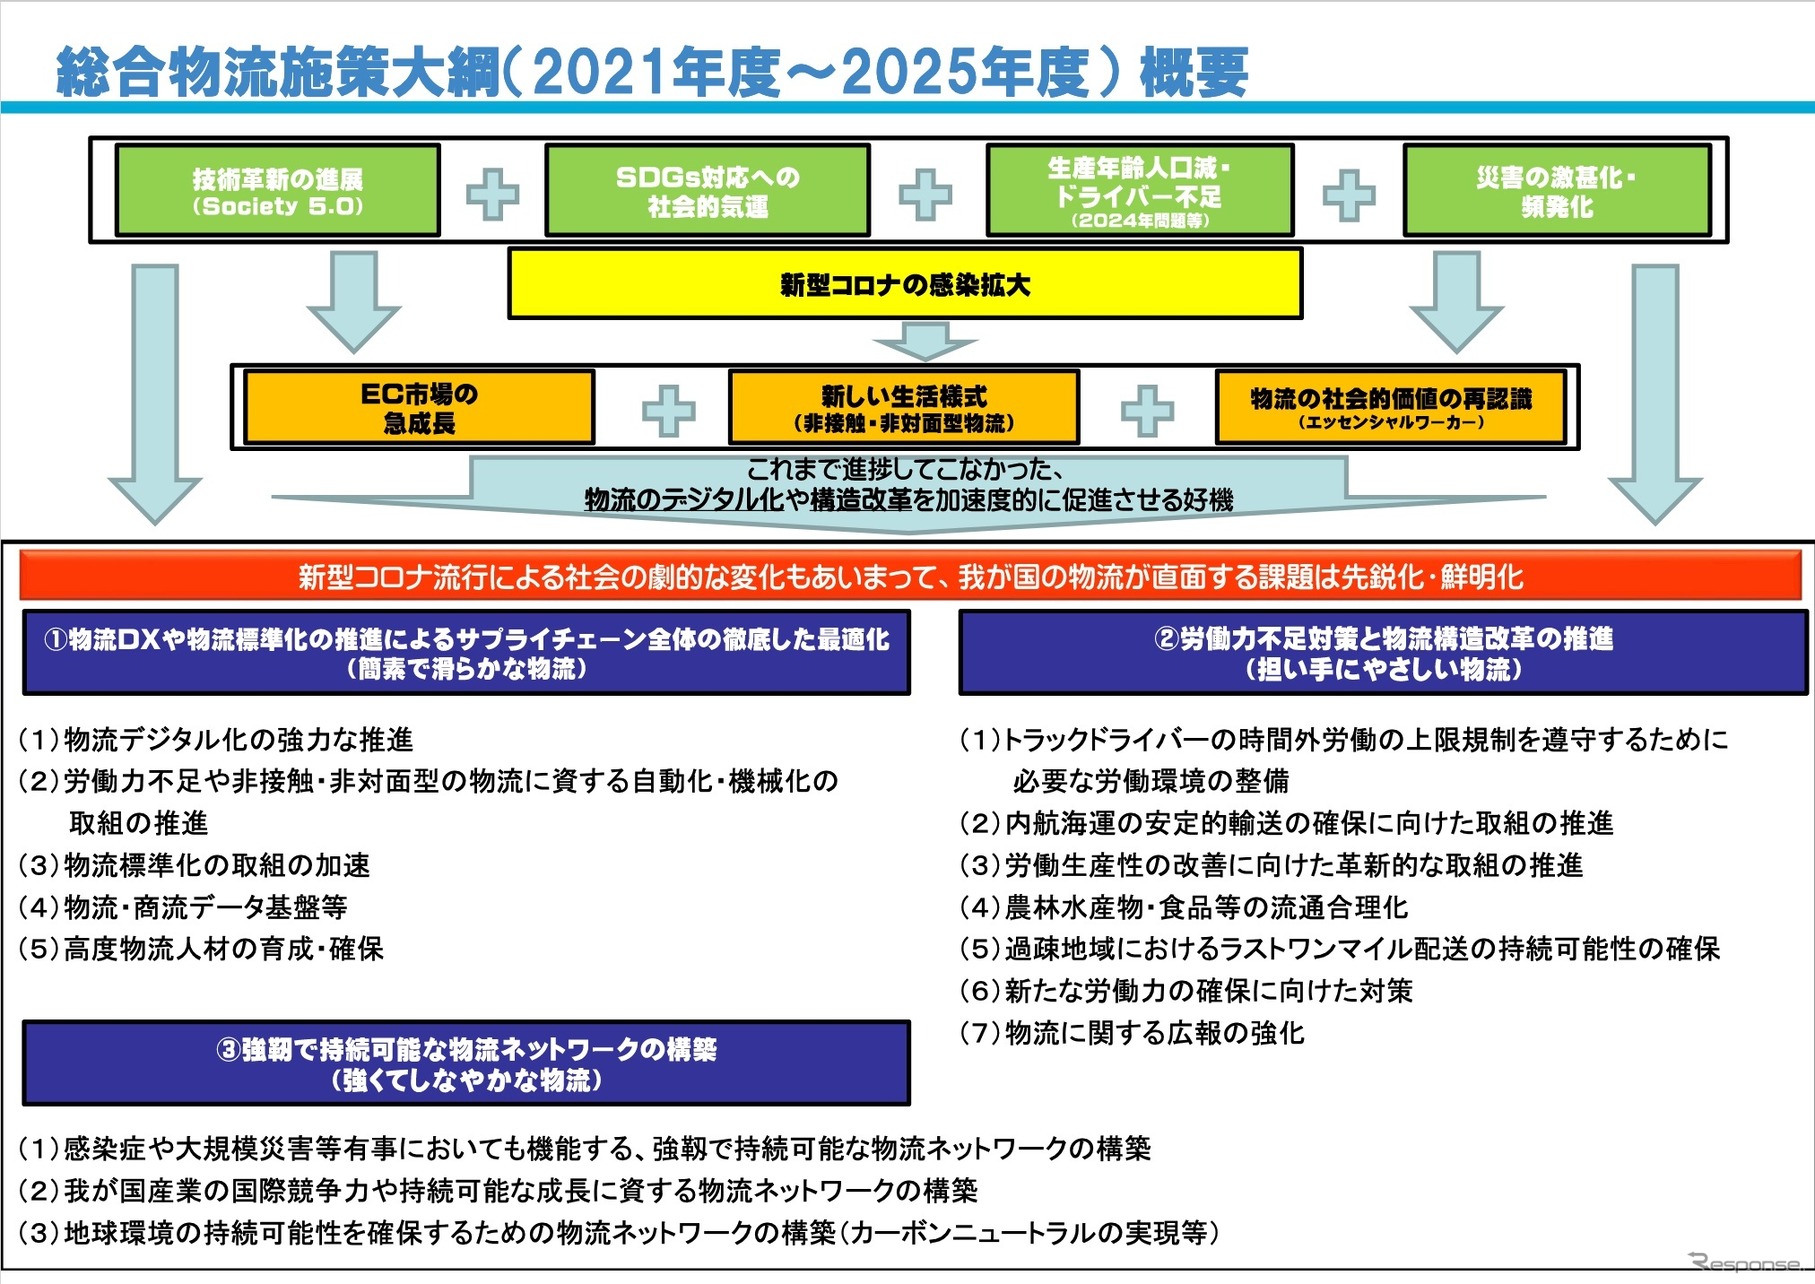 2021年度～2025年度総合物流施策大綱の概要